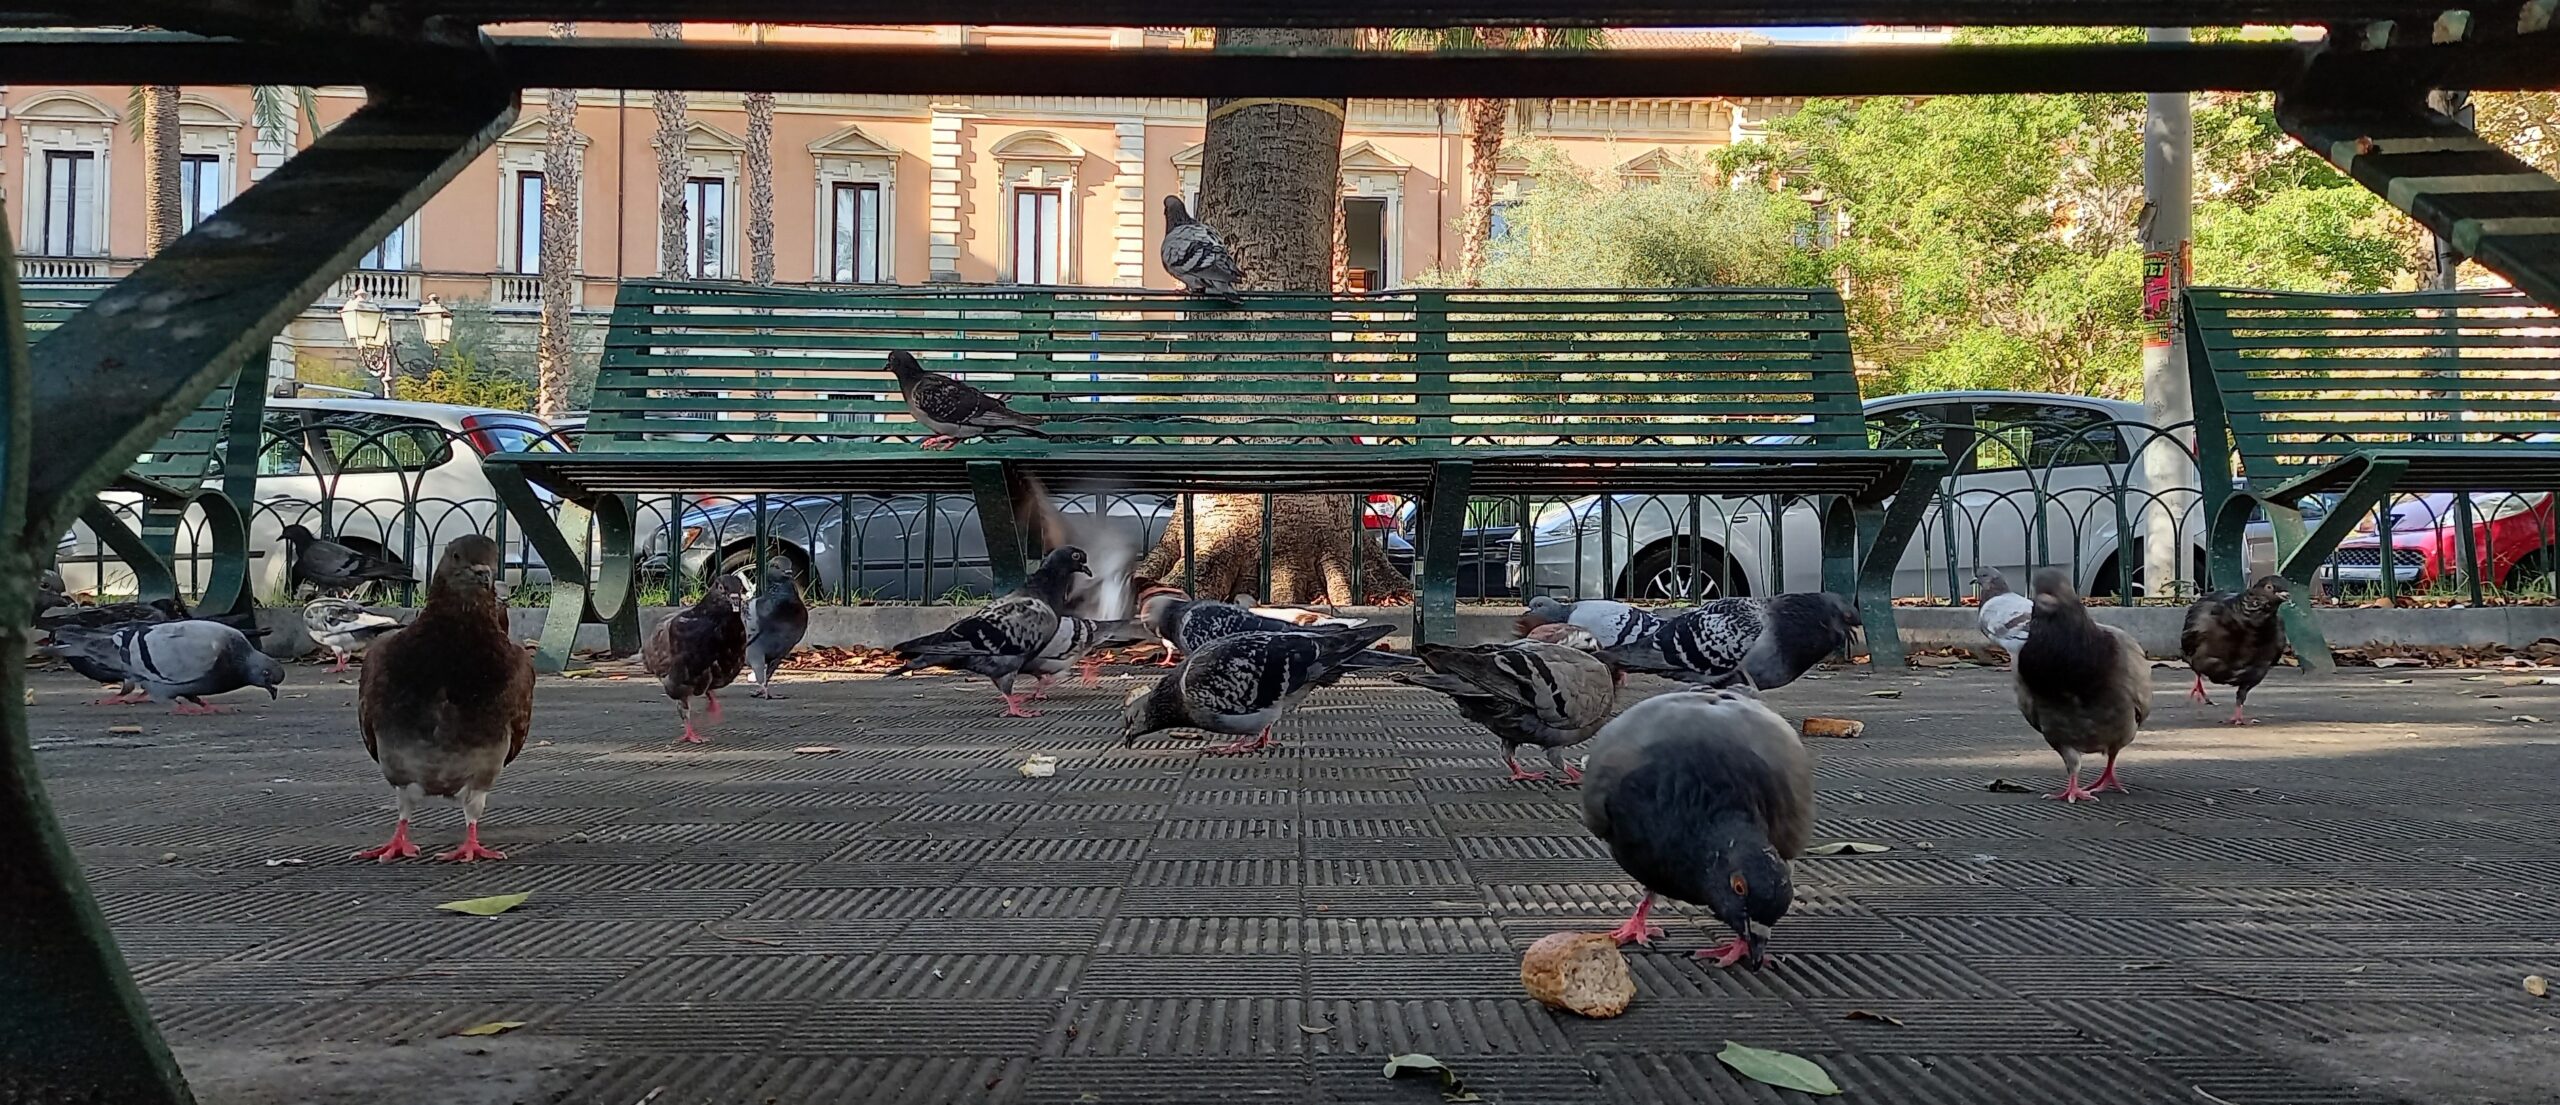 Il Parco Ritrovato Piazza Giovanni Verga Catania Visionaria 1mqdb Sogno Sociale